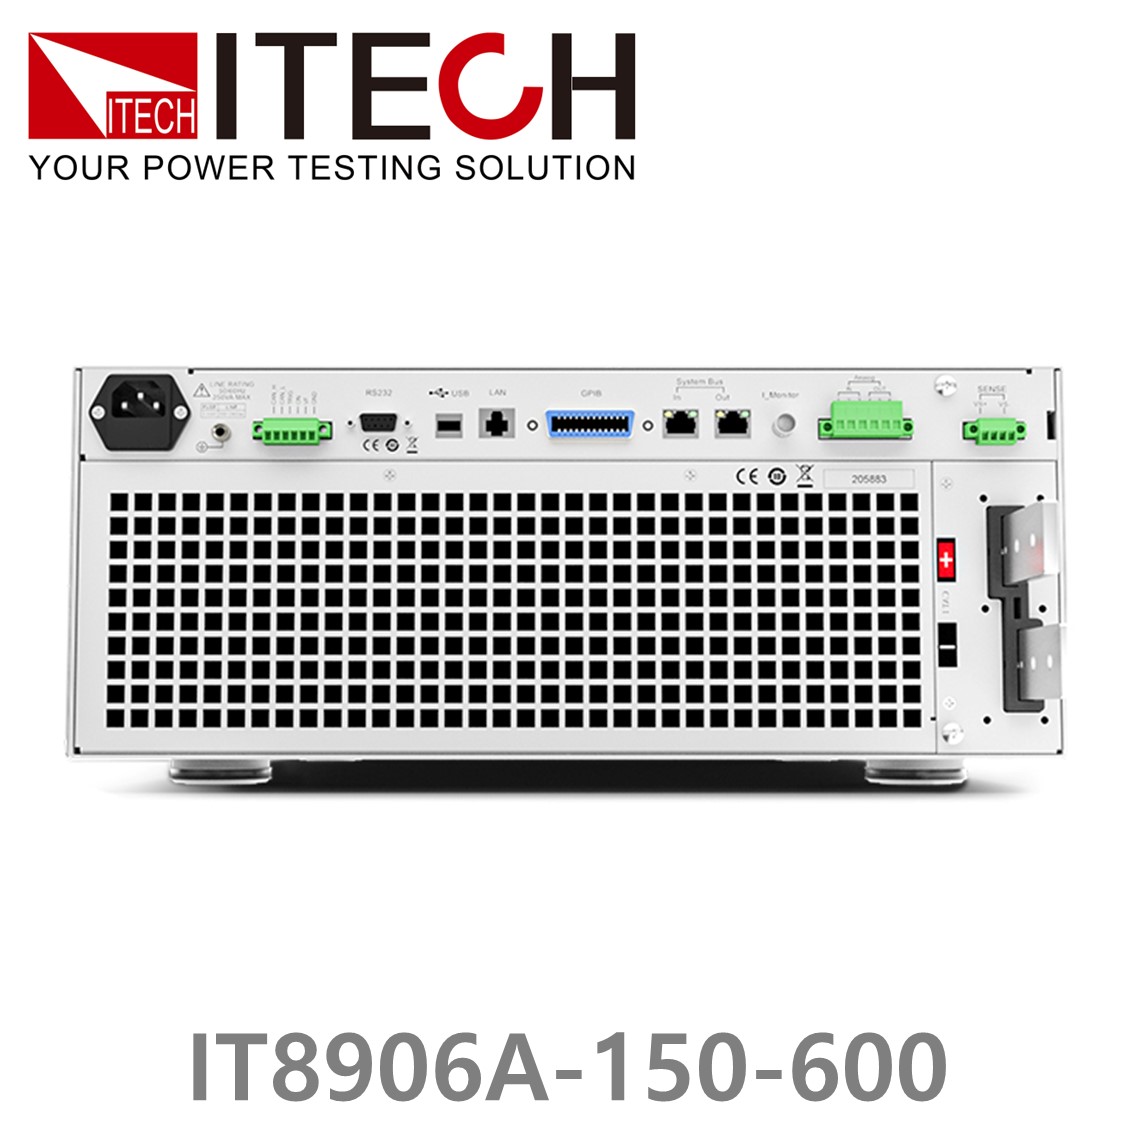 [ ITECH ] IT8906A-150-600  고성능 고전력 DC 전자로드 150V/600A/6kW (4U)